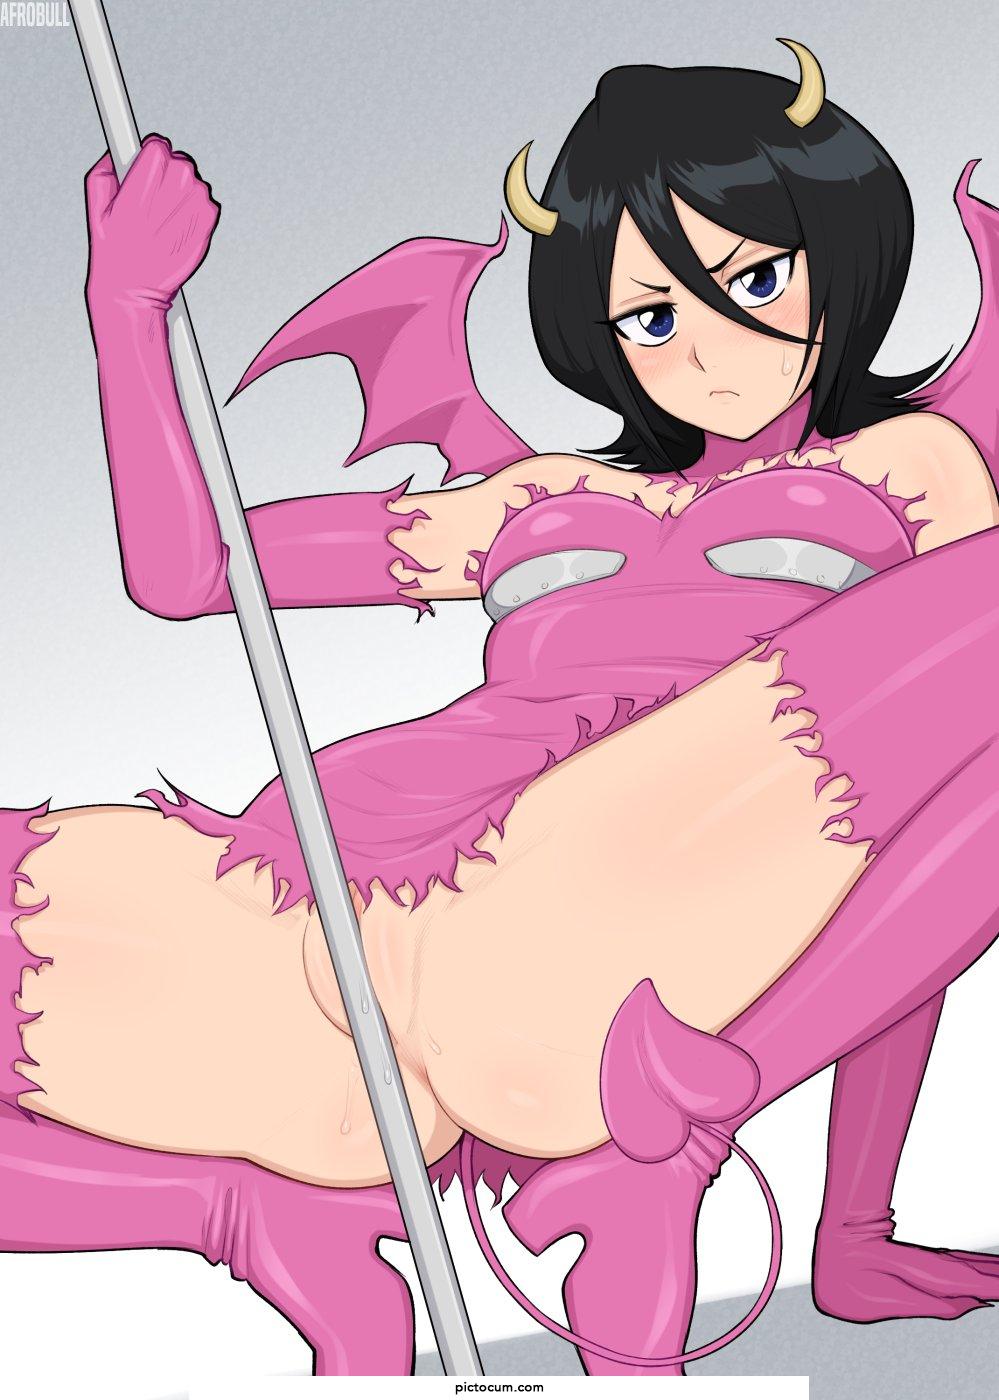 Rukia loves cosplay